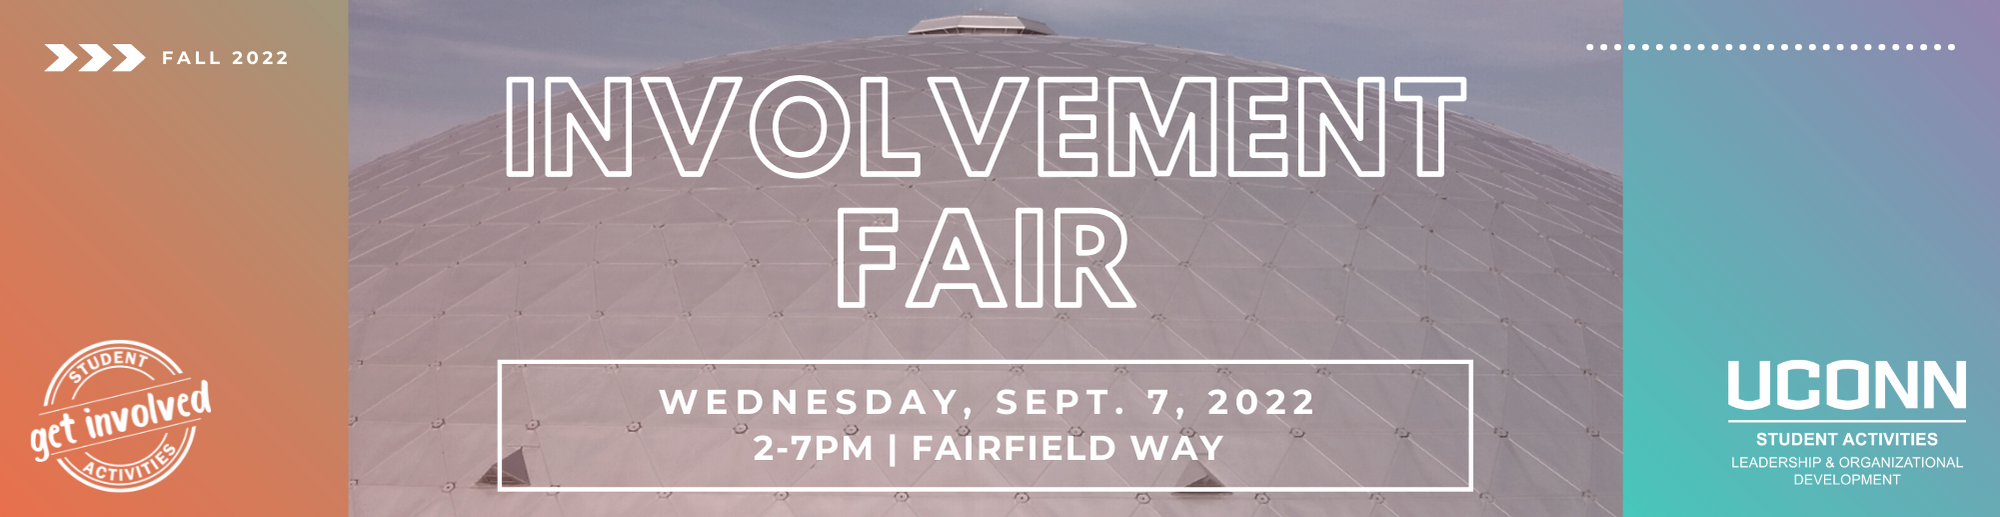 _Inv Fair Fall 22 Web Banner sept 7, 2-7pm, fairfield way